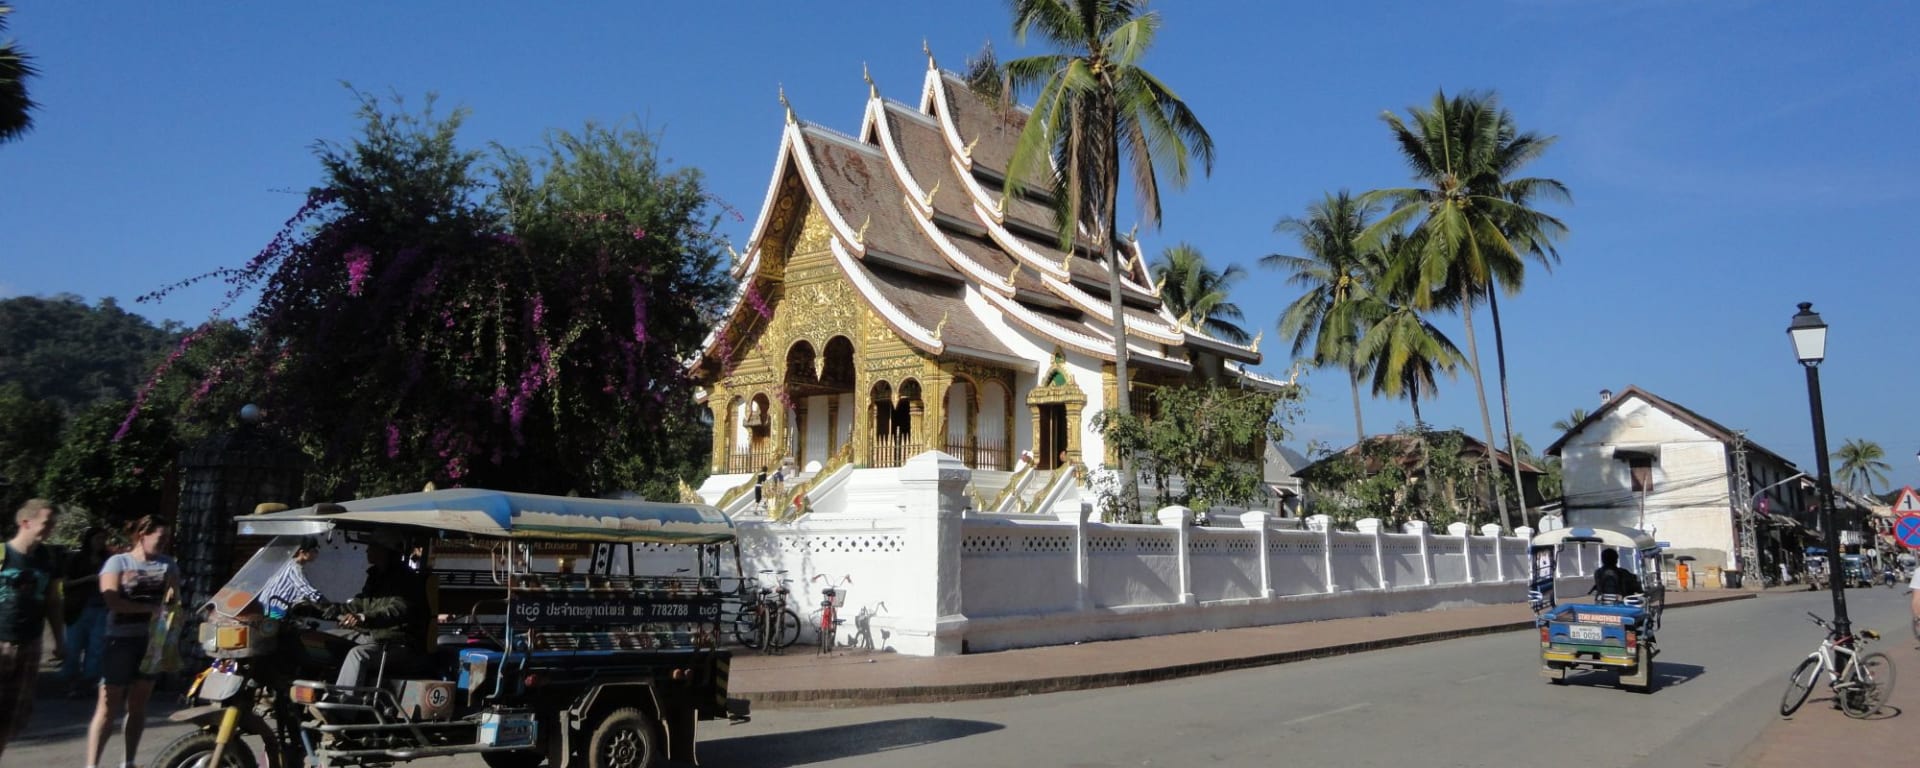 Wissenswertes zu Laos Reisen und Ferien: Luang Prabang: local street scene